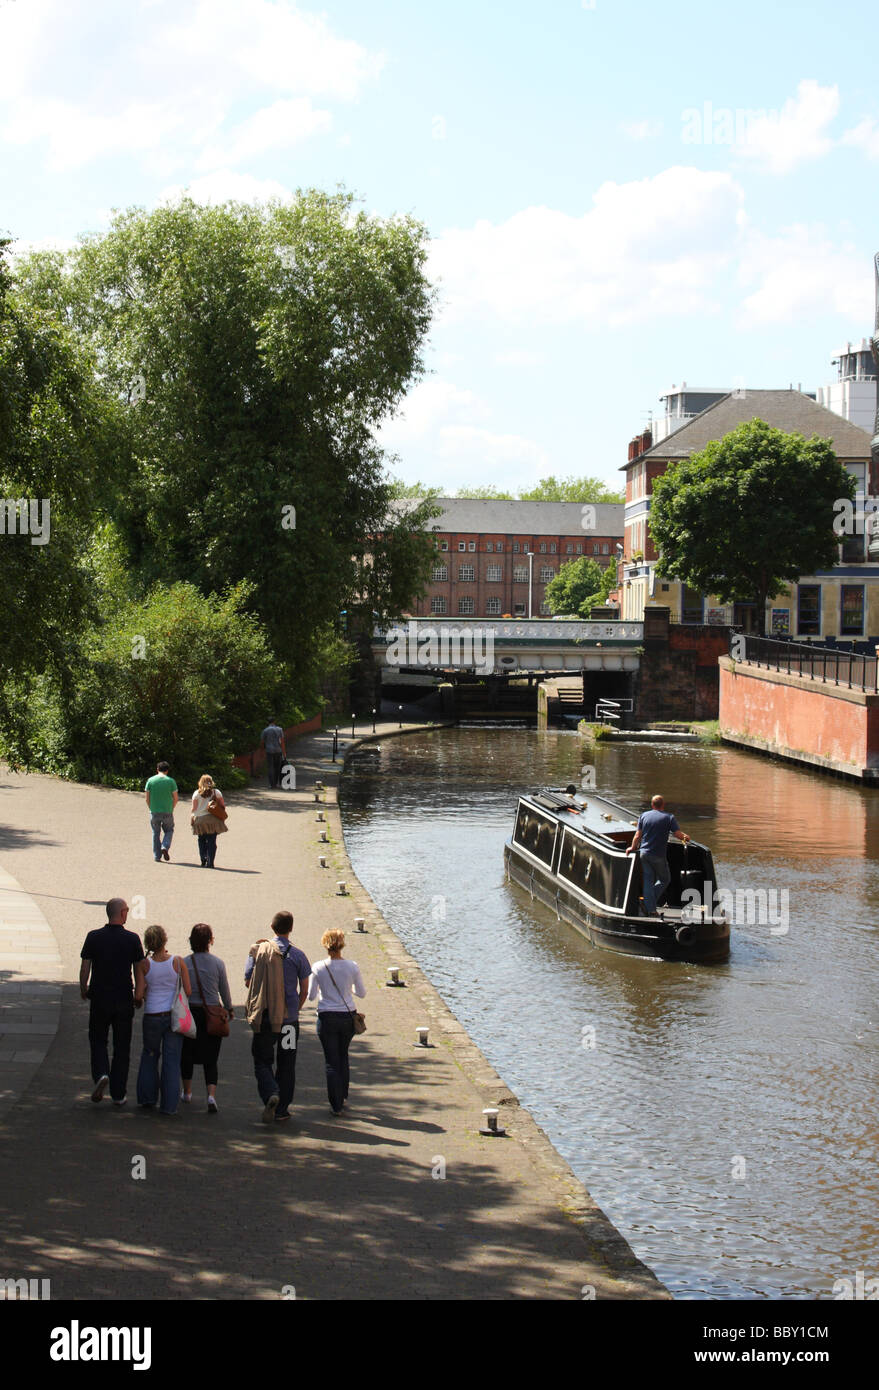 Les promeneurs sur un chemin de halage du canal de Nottingham. Nottingham, Angleterre, Royaume-Uni Banque D'Images